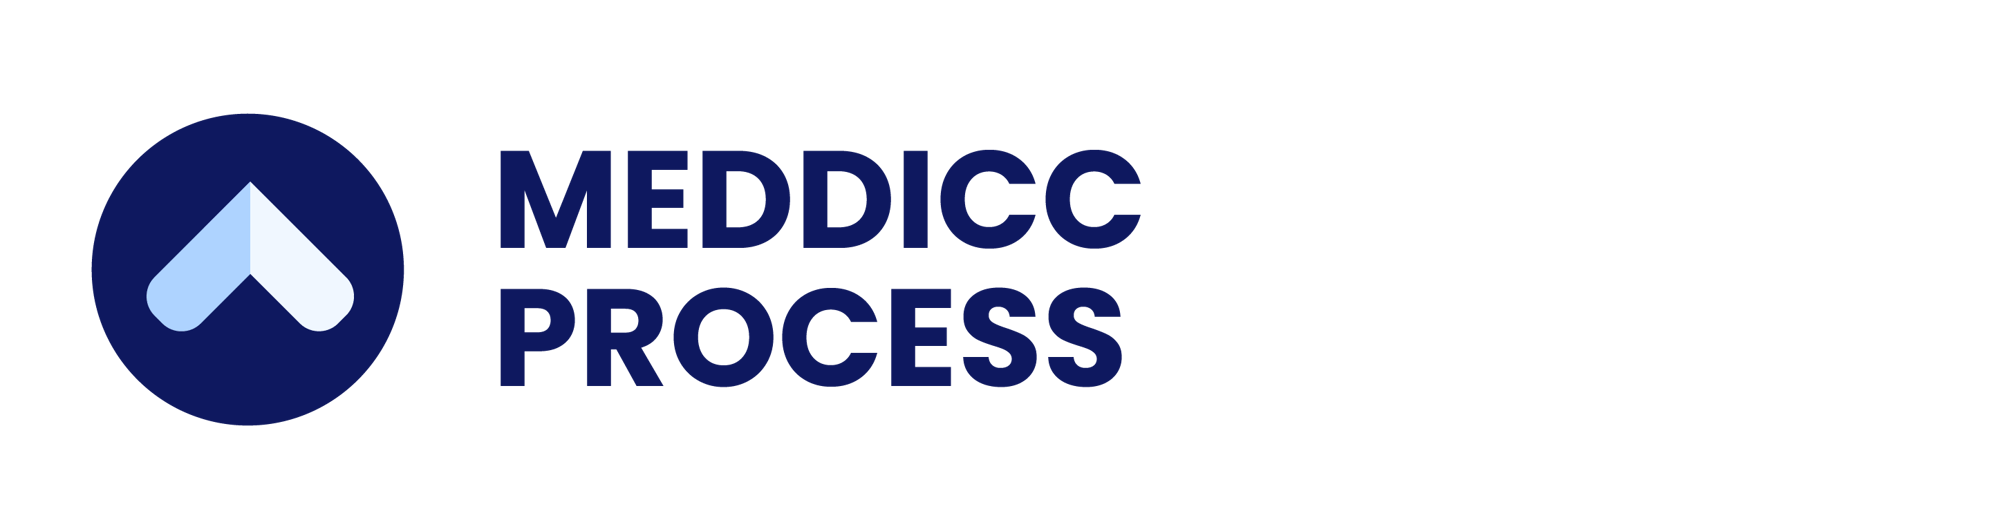 MEDDICC-PROCESS-COLOUR